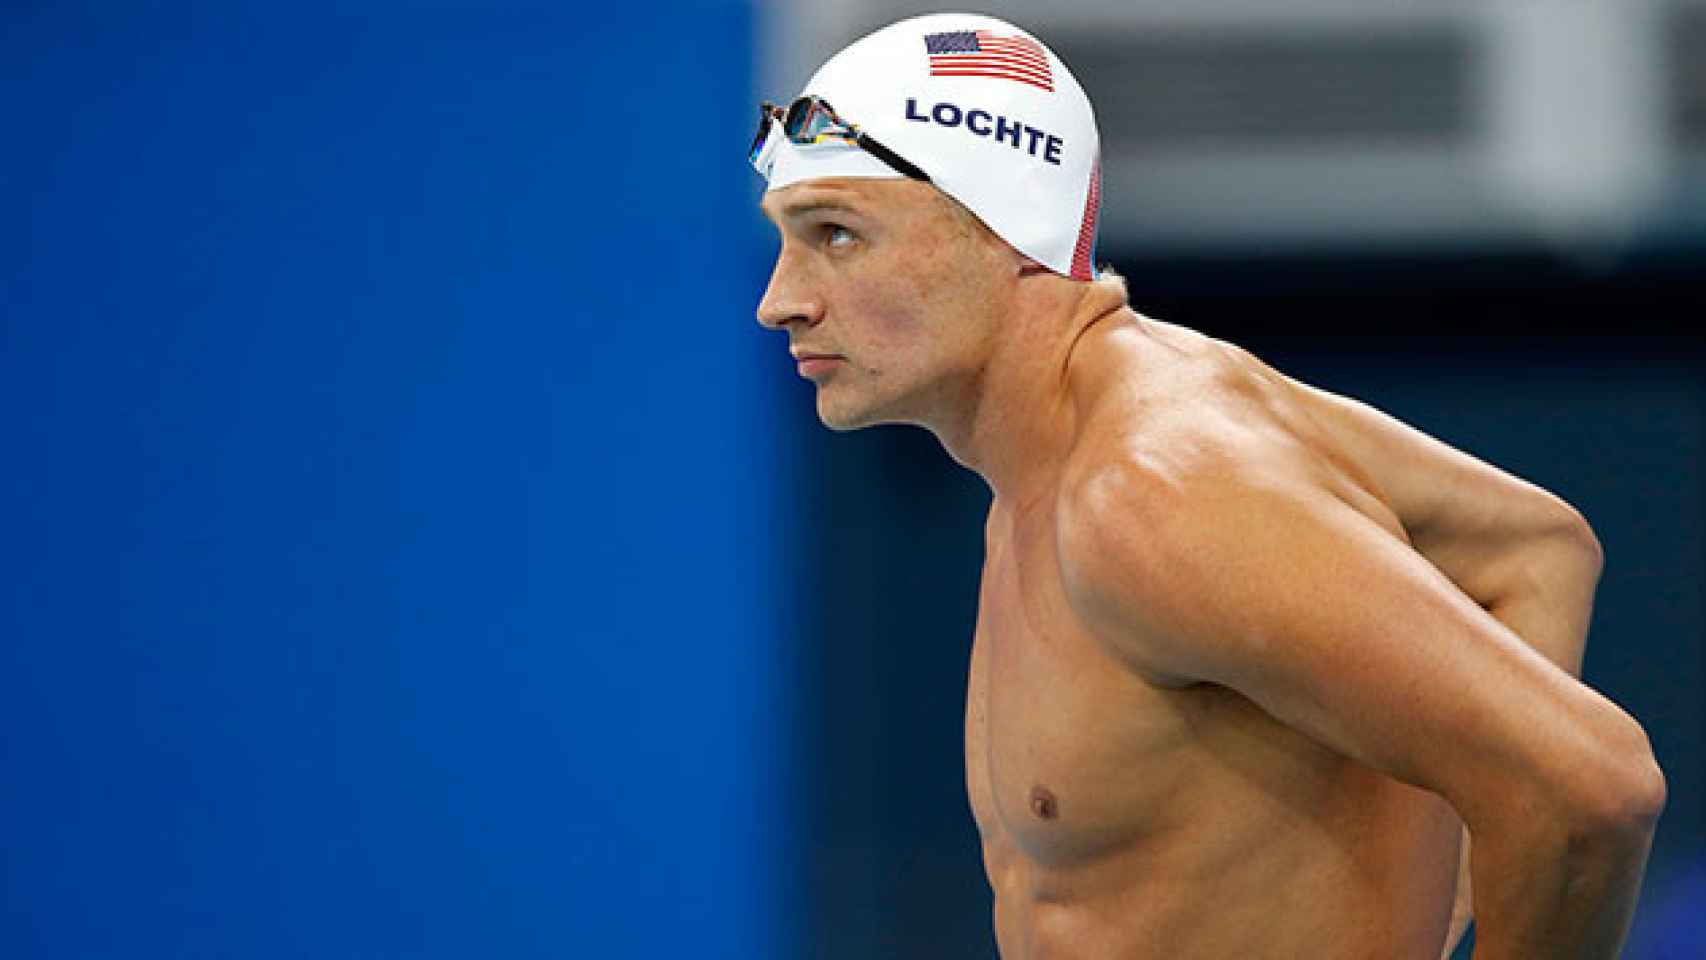 El nadador del equipo estadounidense, Ryan Lochte, antes de una prueba en los Juegos Olímpicos de Río. / EFE